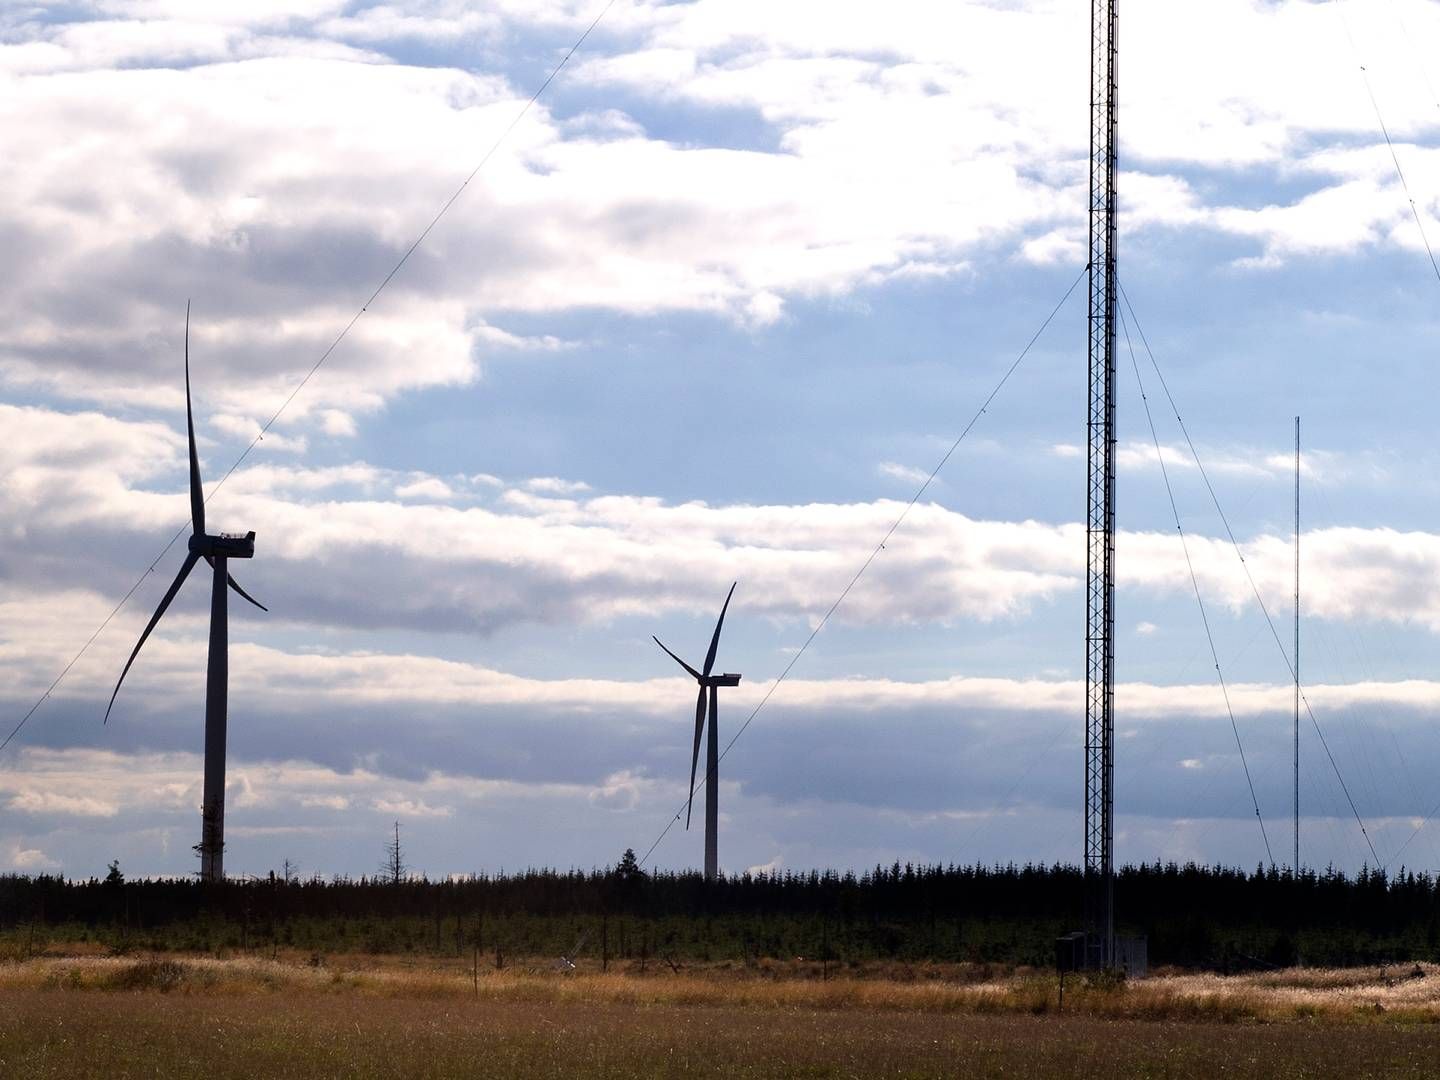 Danmark har to nationale testcentre for store vindmøller ved henholdsvis Østerild og Høvsøre. | Foto: Carsten Andreasen